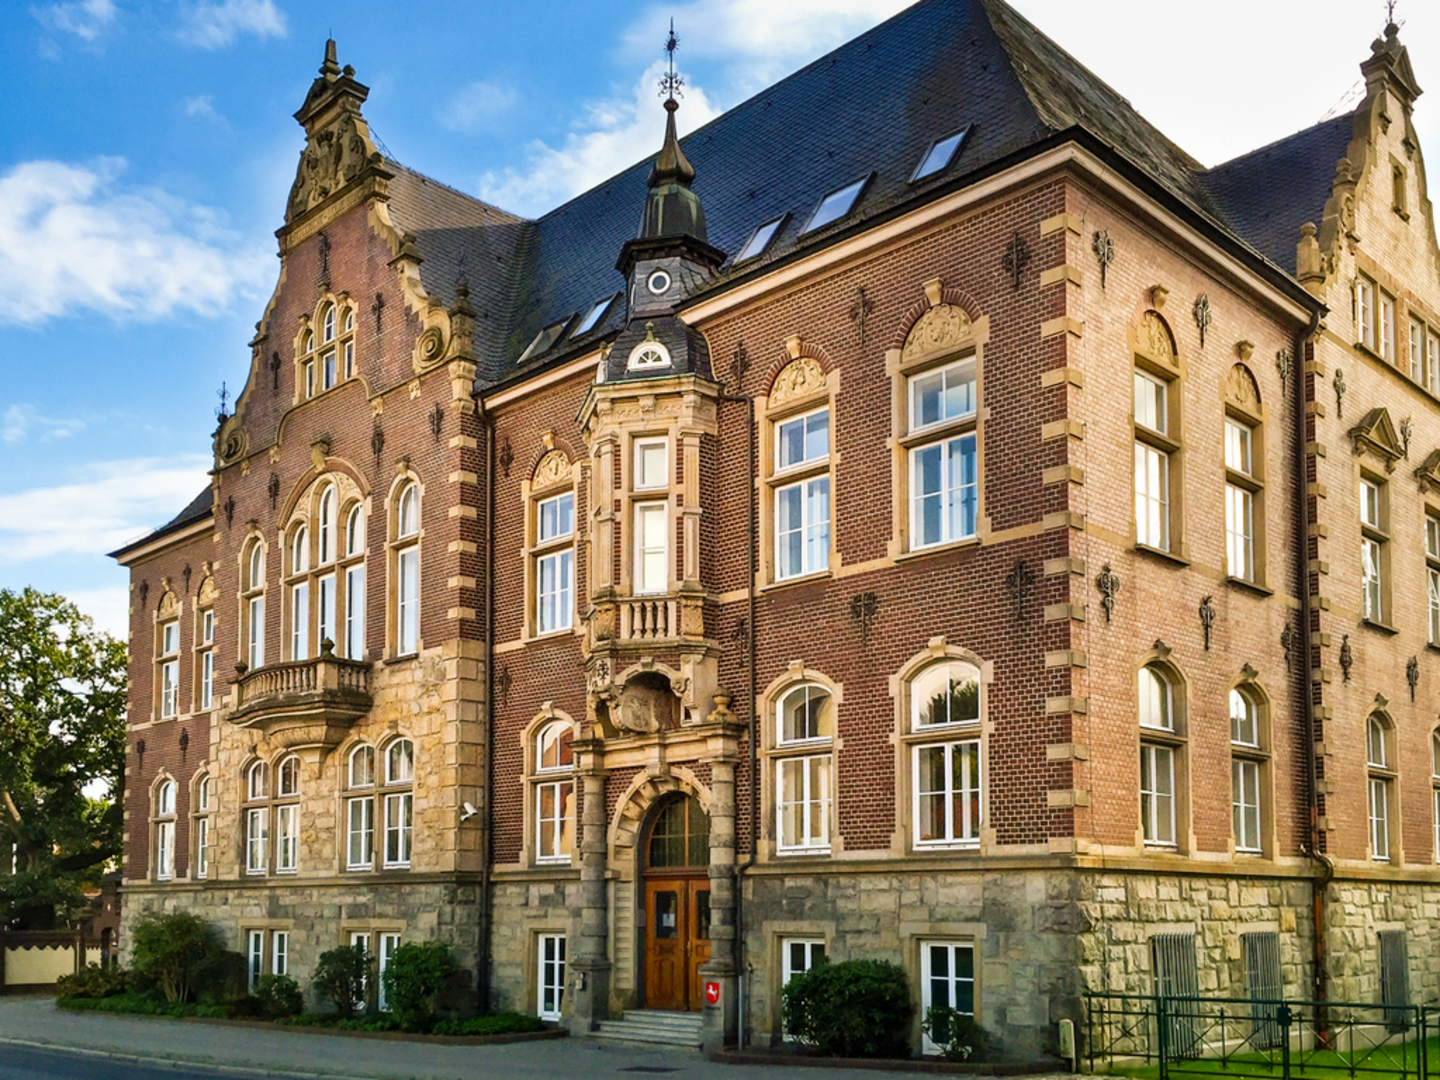 Bei einem Stadtrundgang durch Delmenhorst lassen sich schöne Bauten aus verschiedenen Stilepochen, wie das Amtsgericht, entdecken. Foto: SvD/Pixabay.com